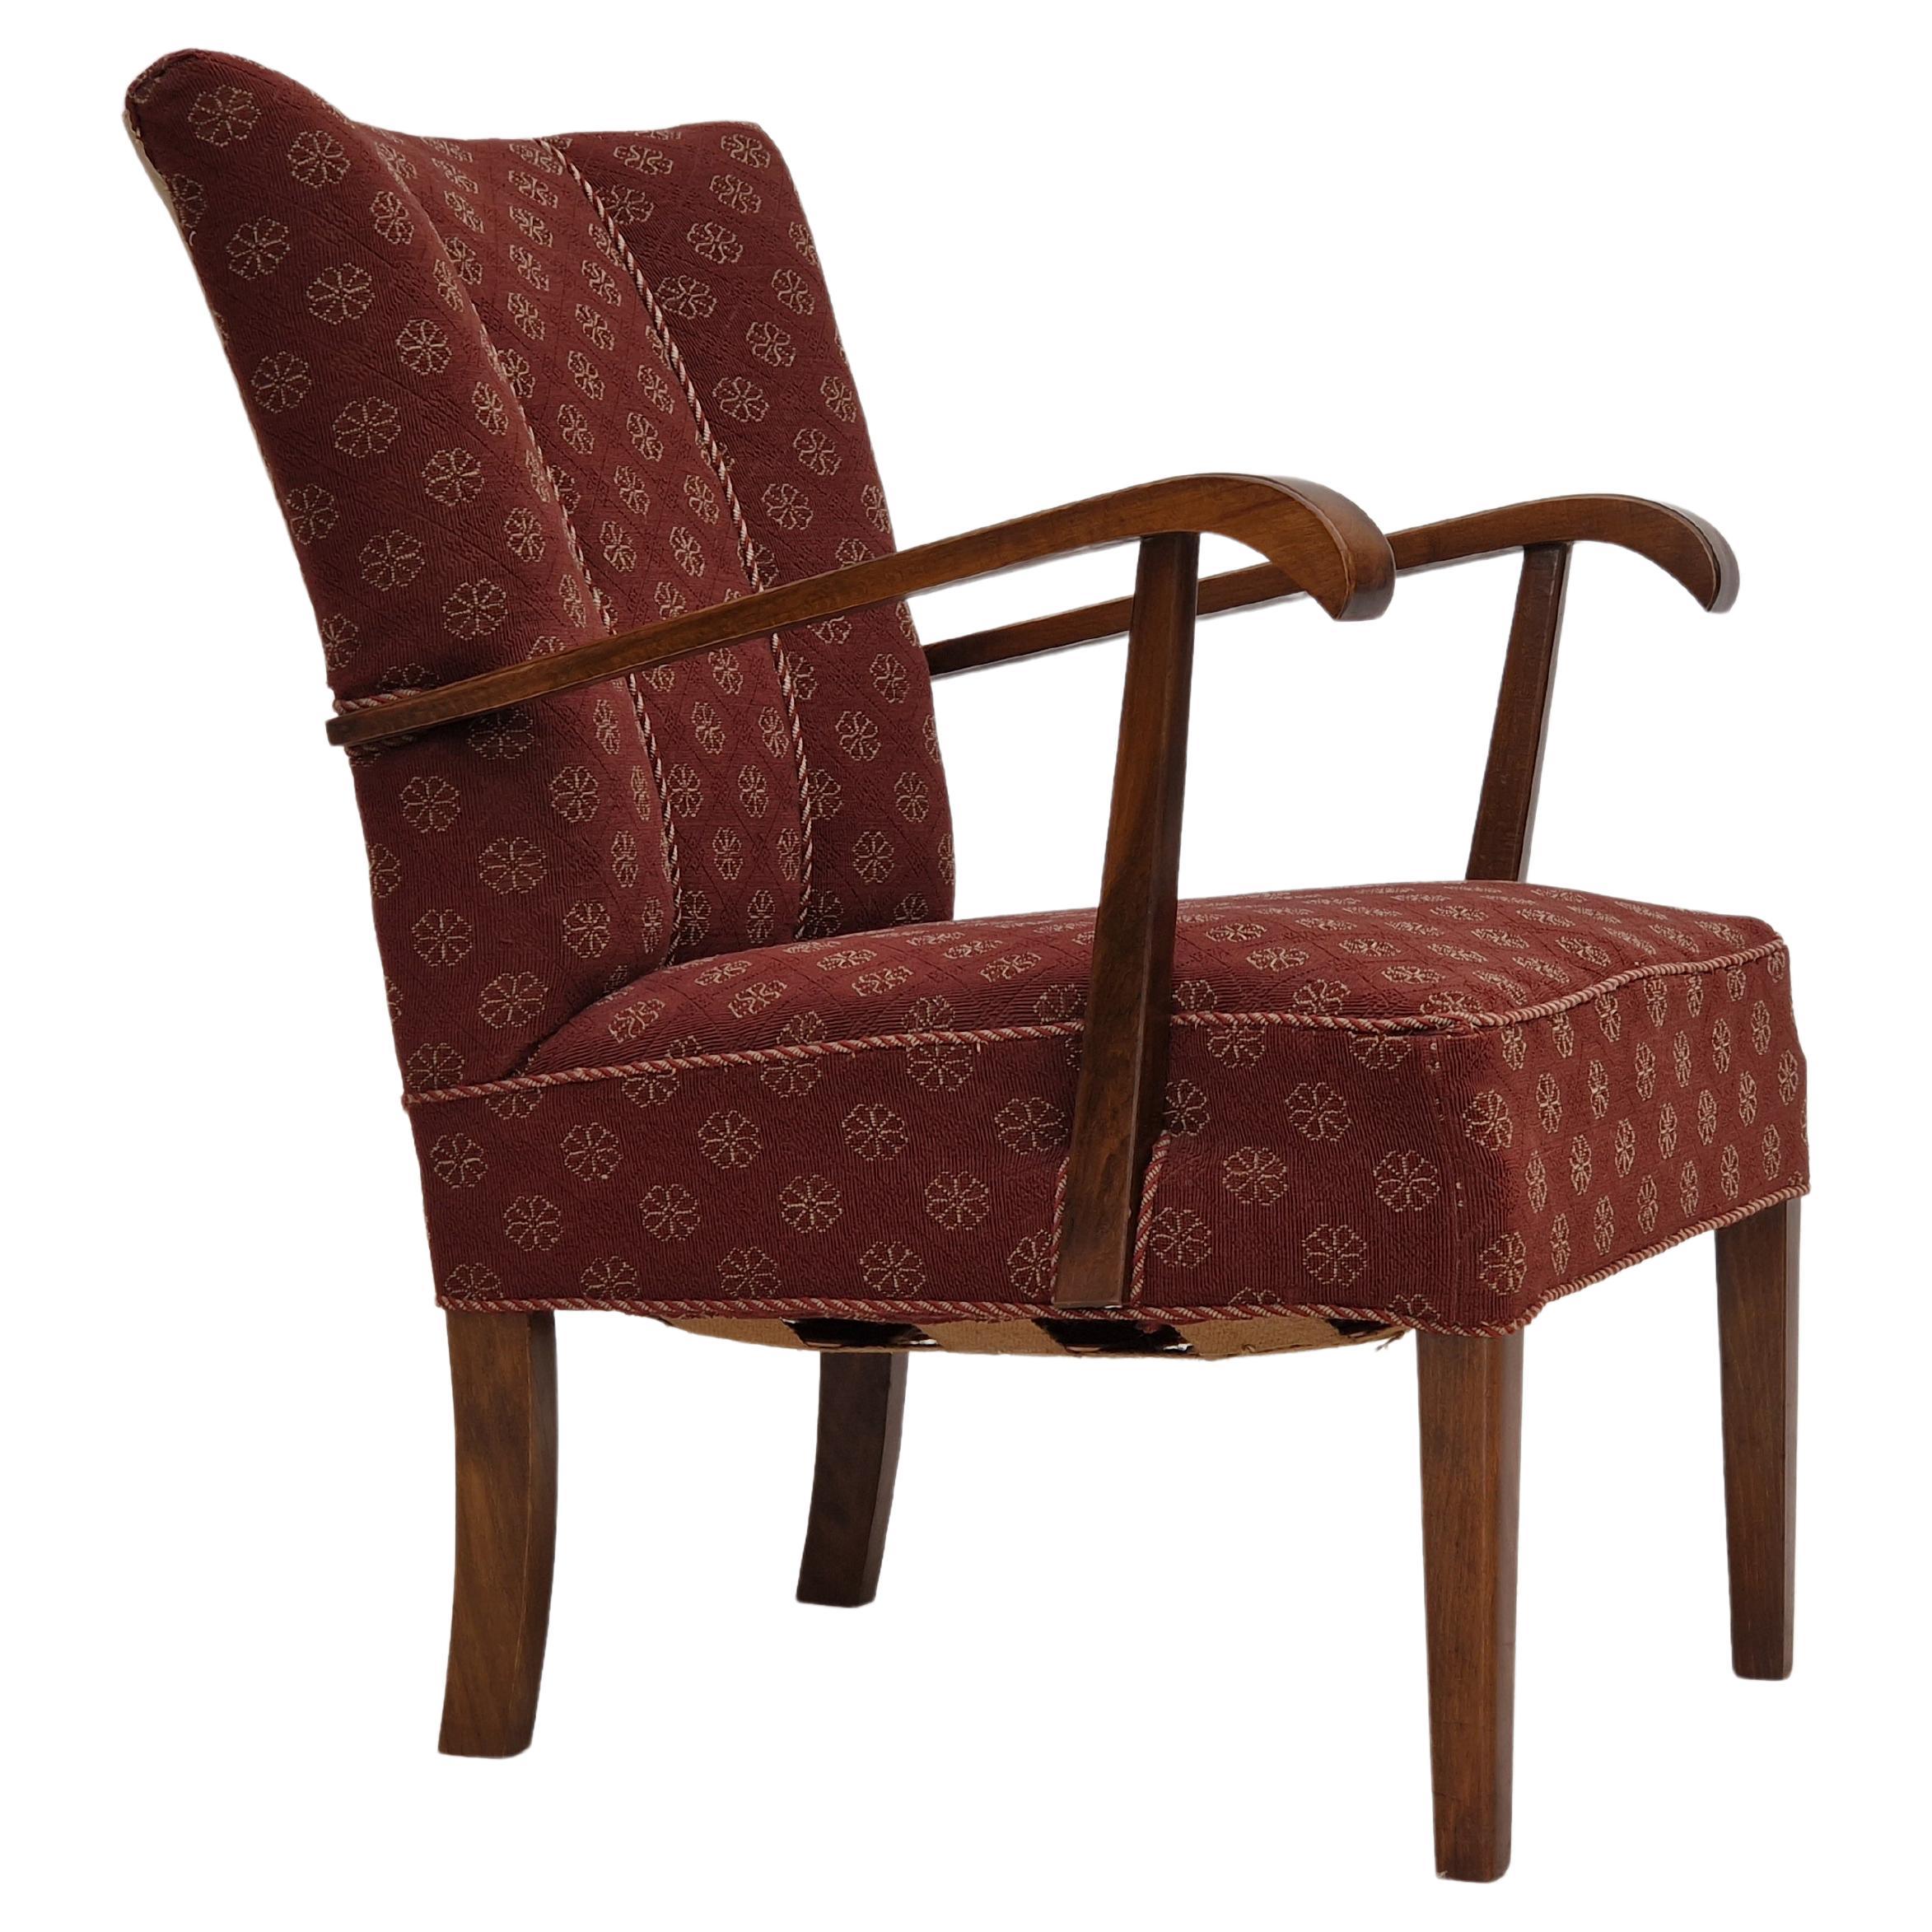 Design danois des années 1950, fauteuil d'origine en très bon état.